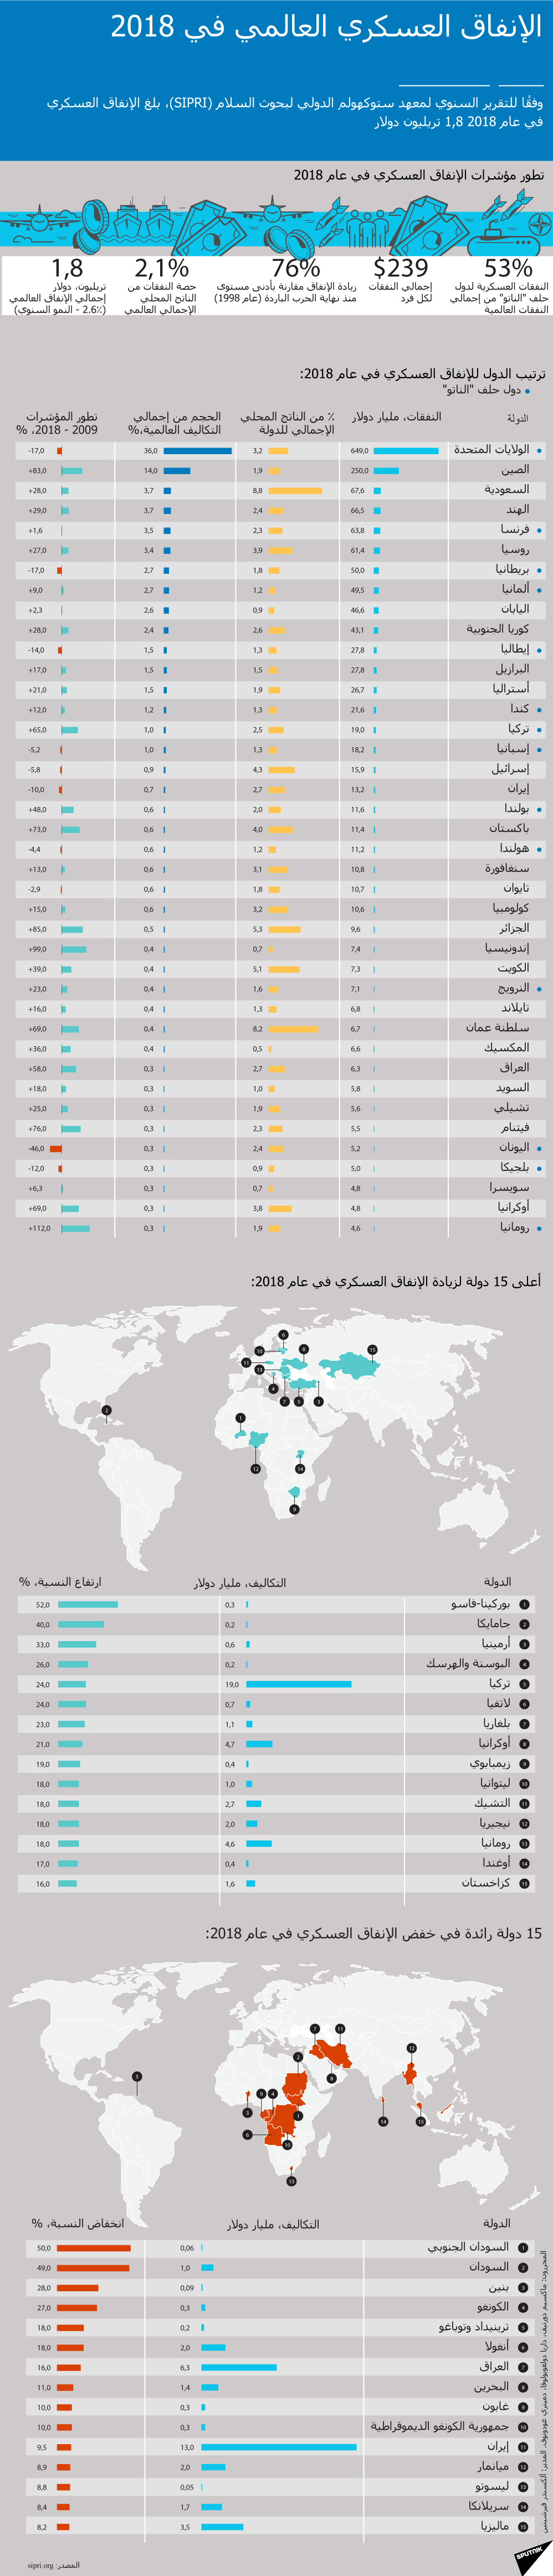 الإنفاق العسكري العالمي في 2018 - سبوتنيك عربي